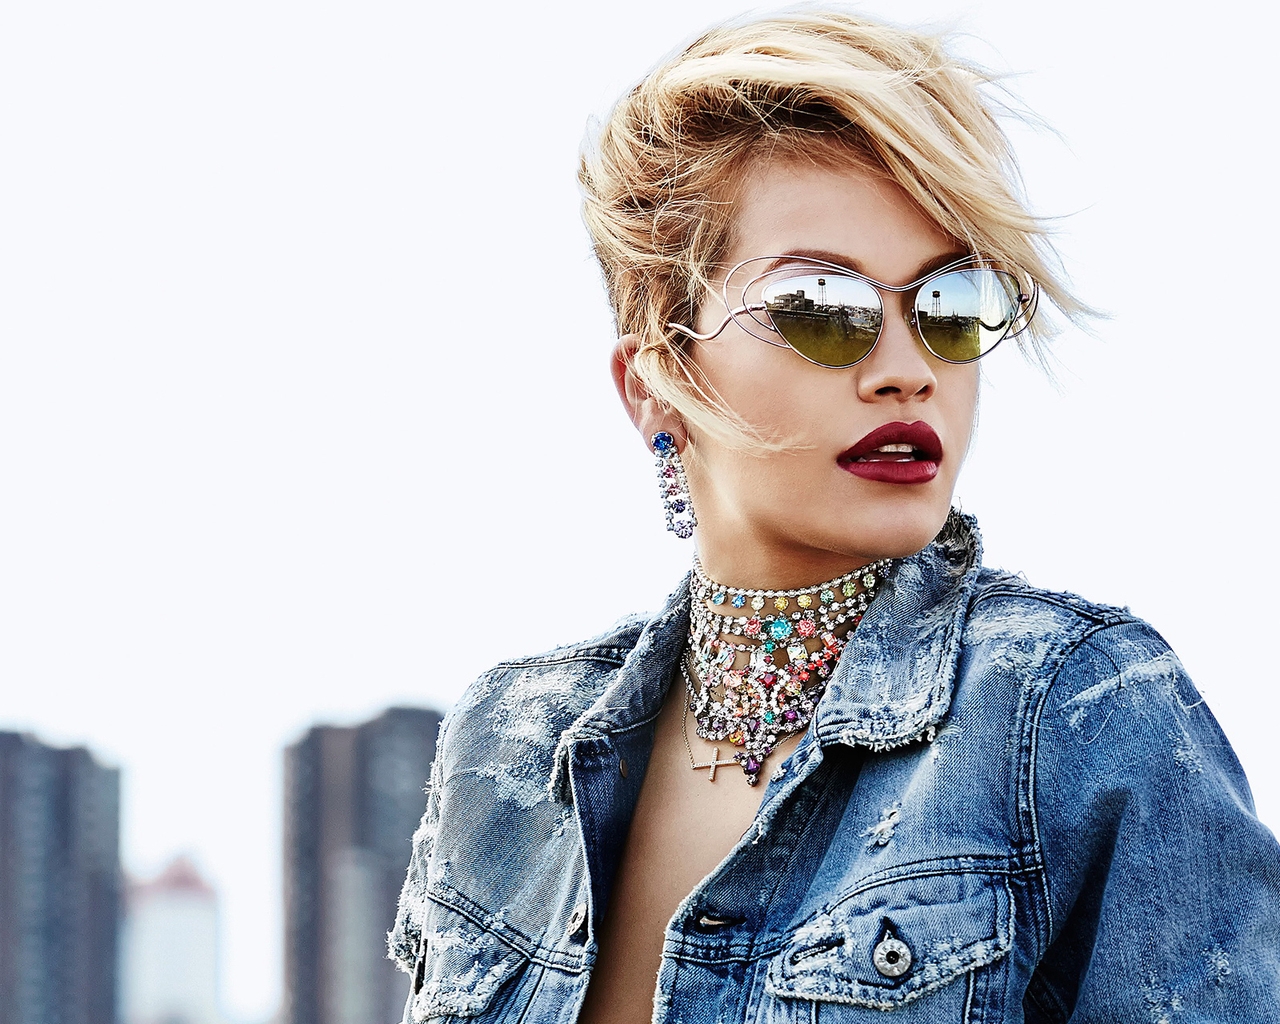 Rita Ora with Sunglasses for 1280 x 1024 resolution